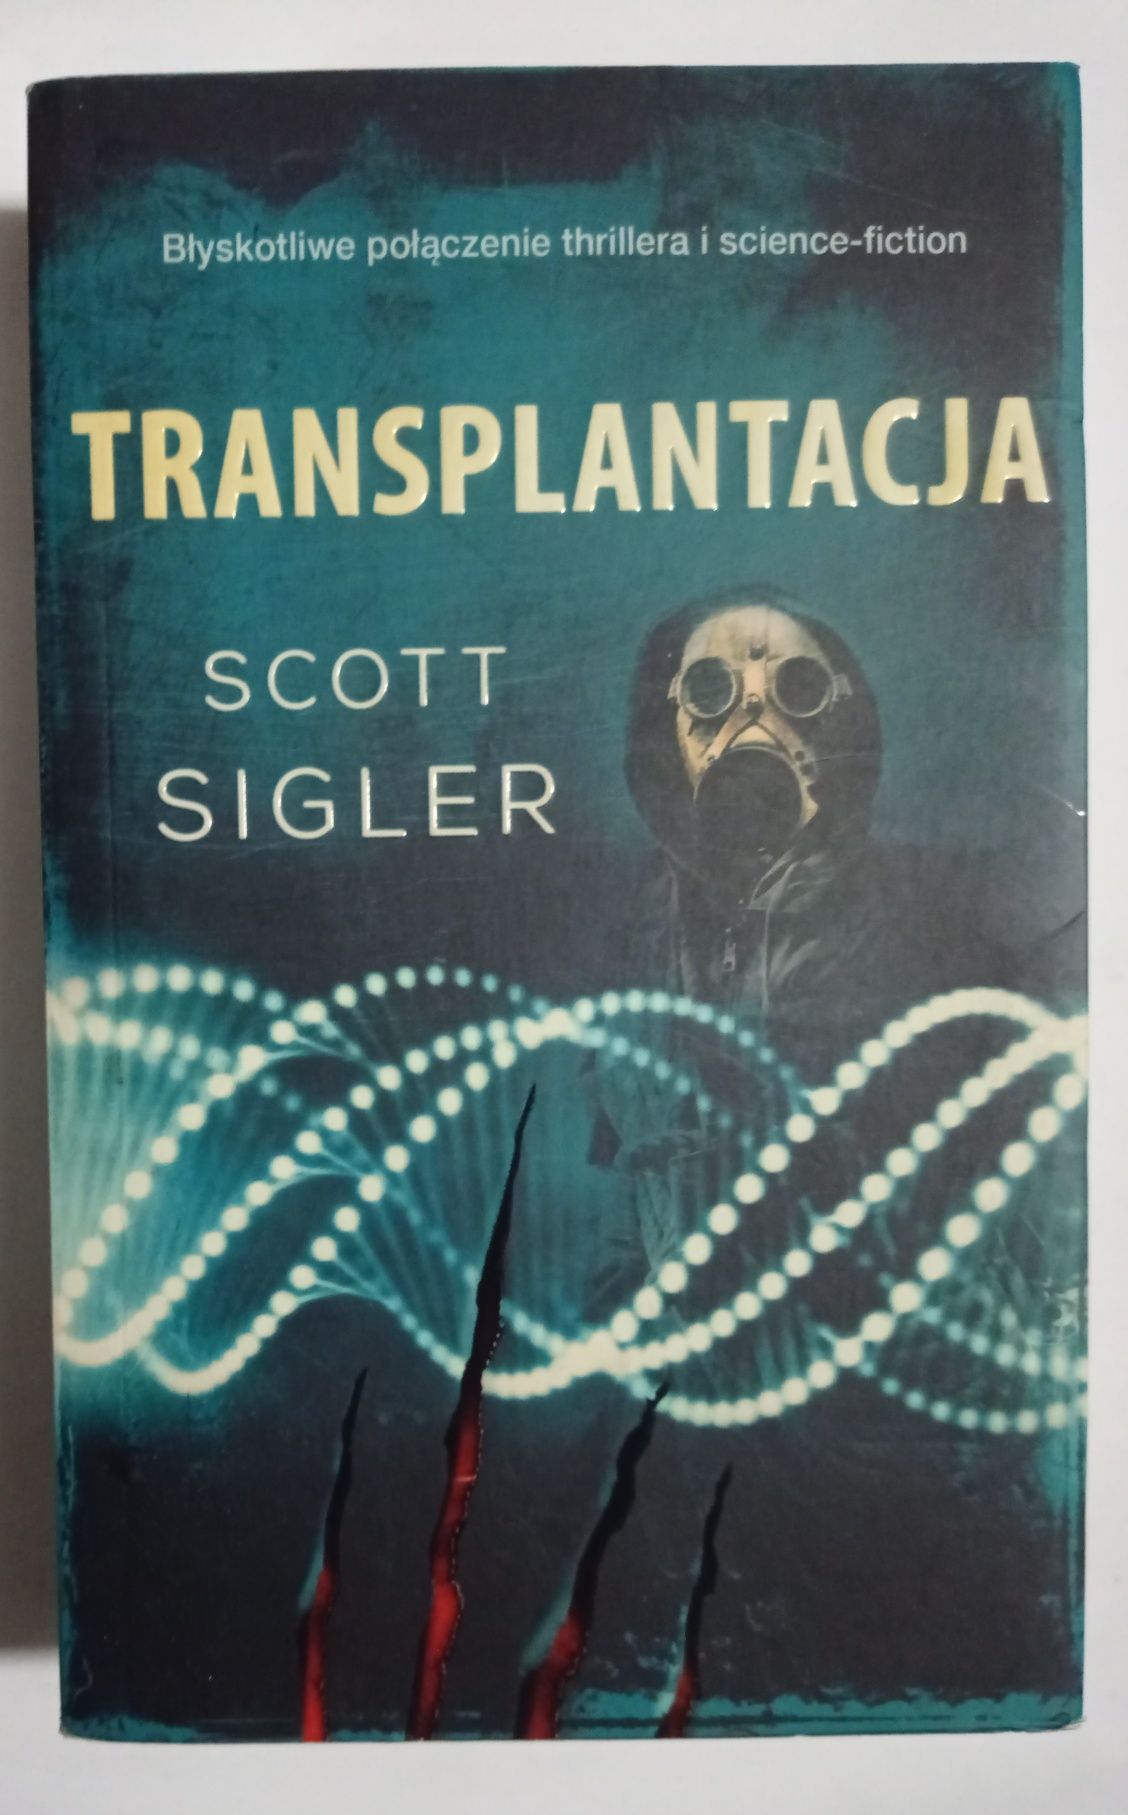 Transplantacja Scott sigler